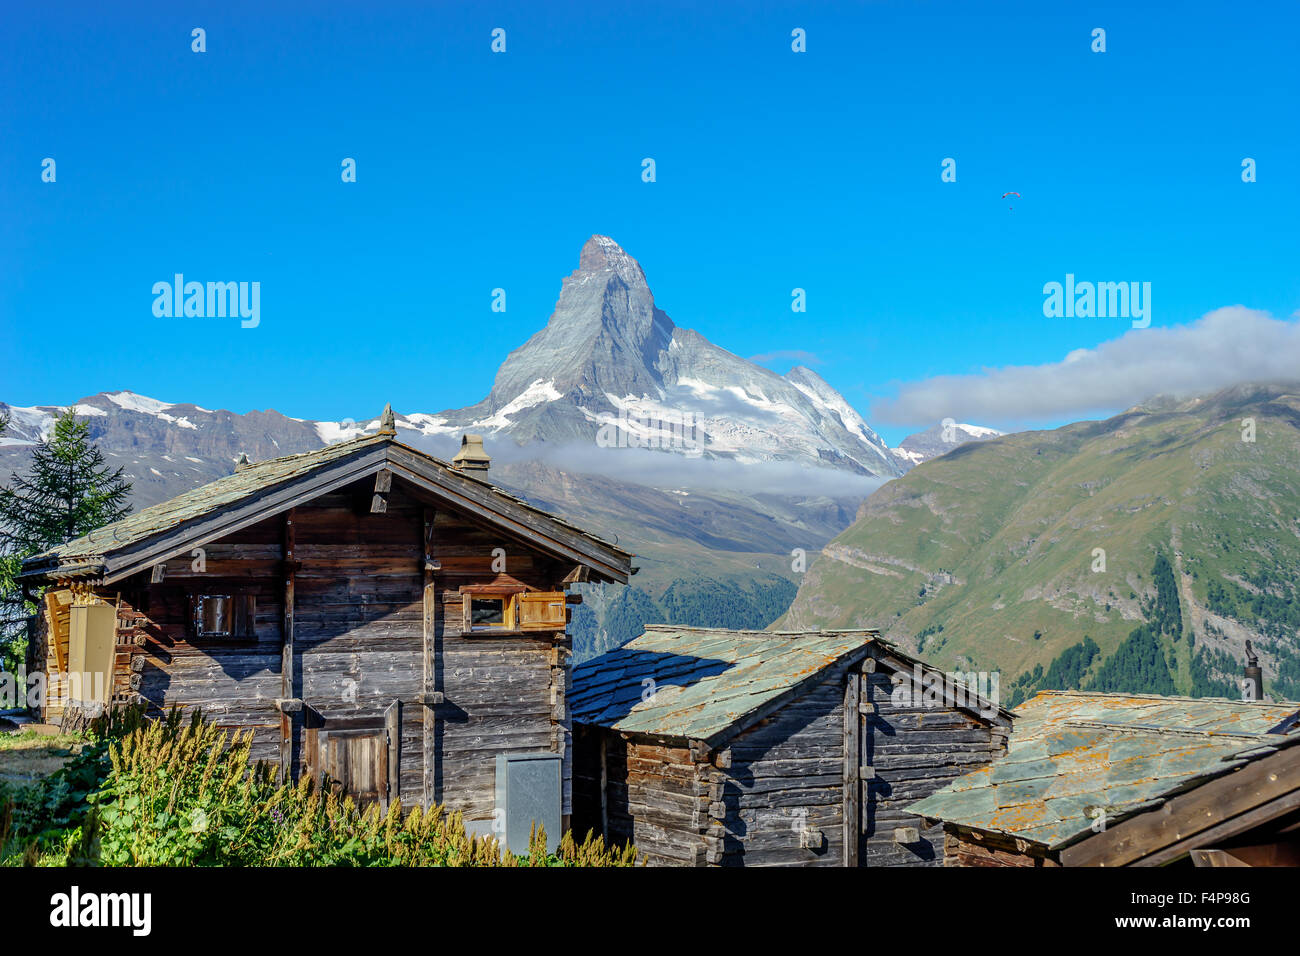 Cabines s'asseoir dans un village de montagne sous le célèbre Matterhorn peak. Juillet, 2015. Cervin, Suisse. Banque D'Images